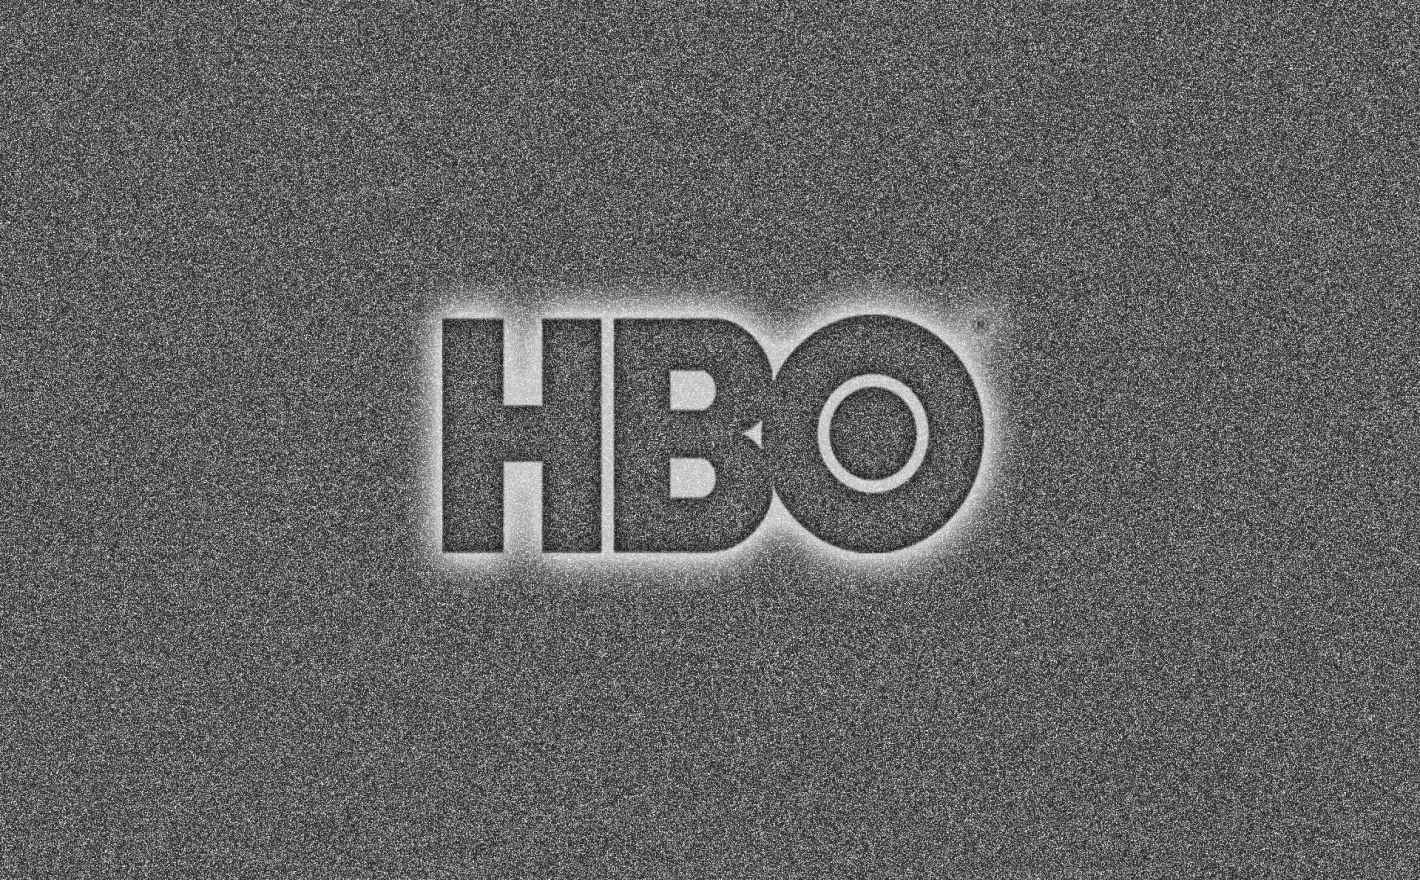 شبکه HBO